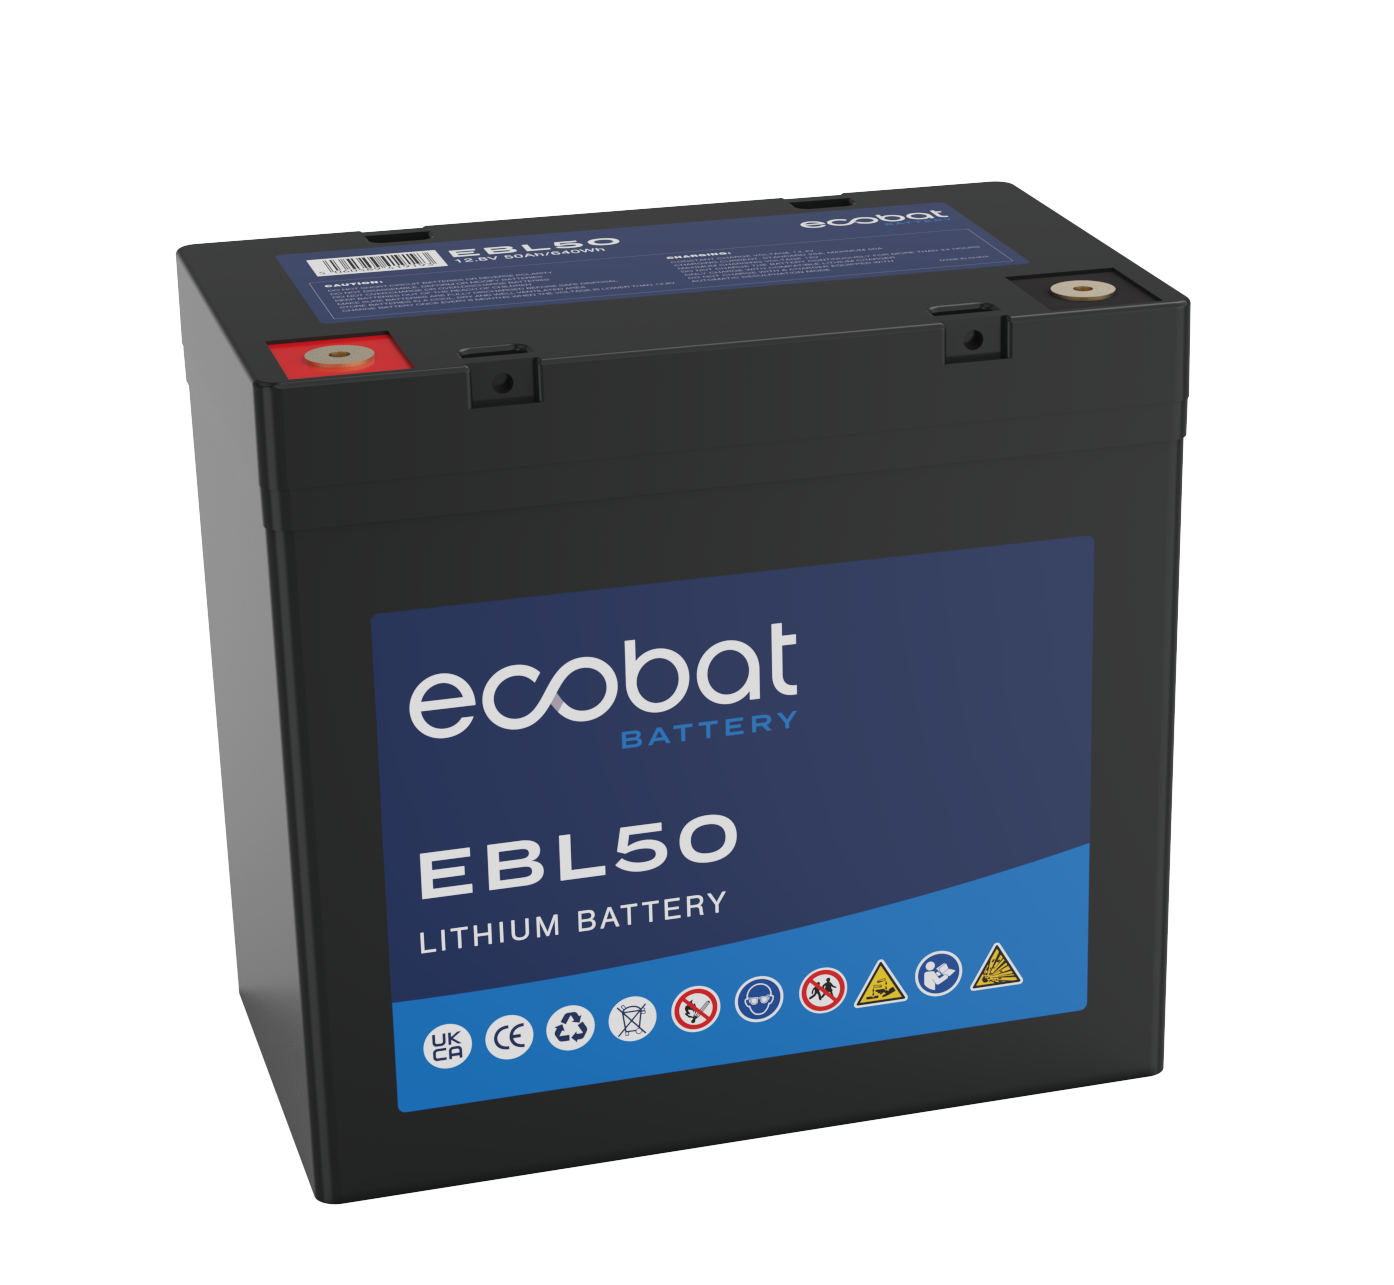 Ecobat EBL50